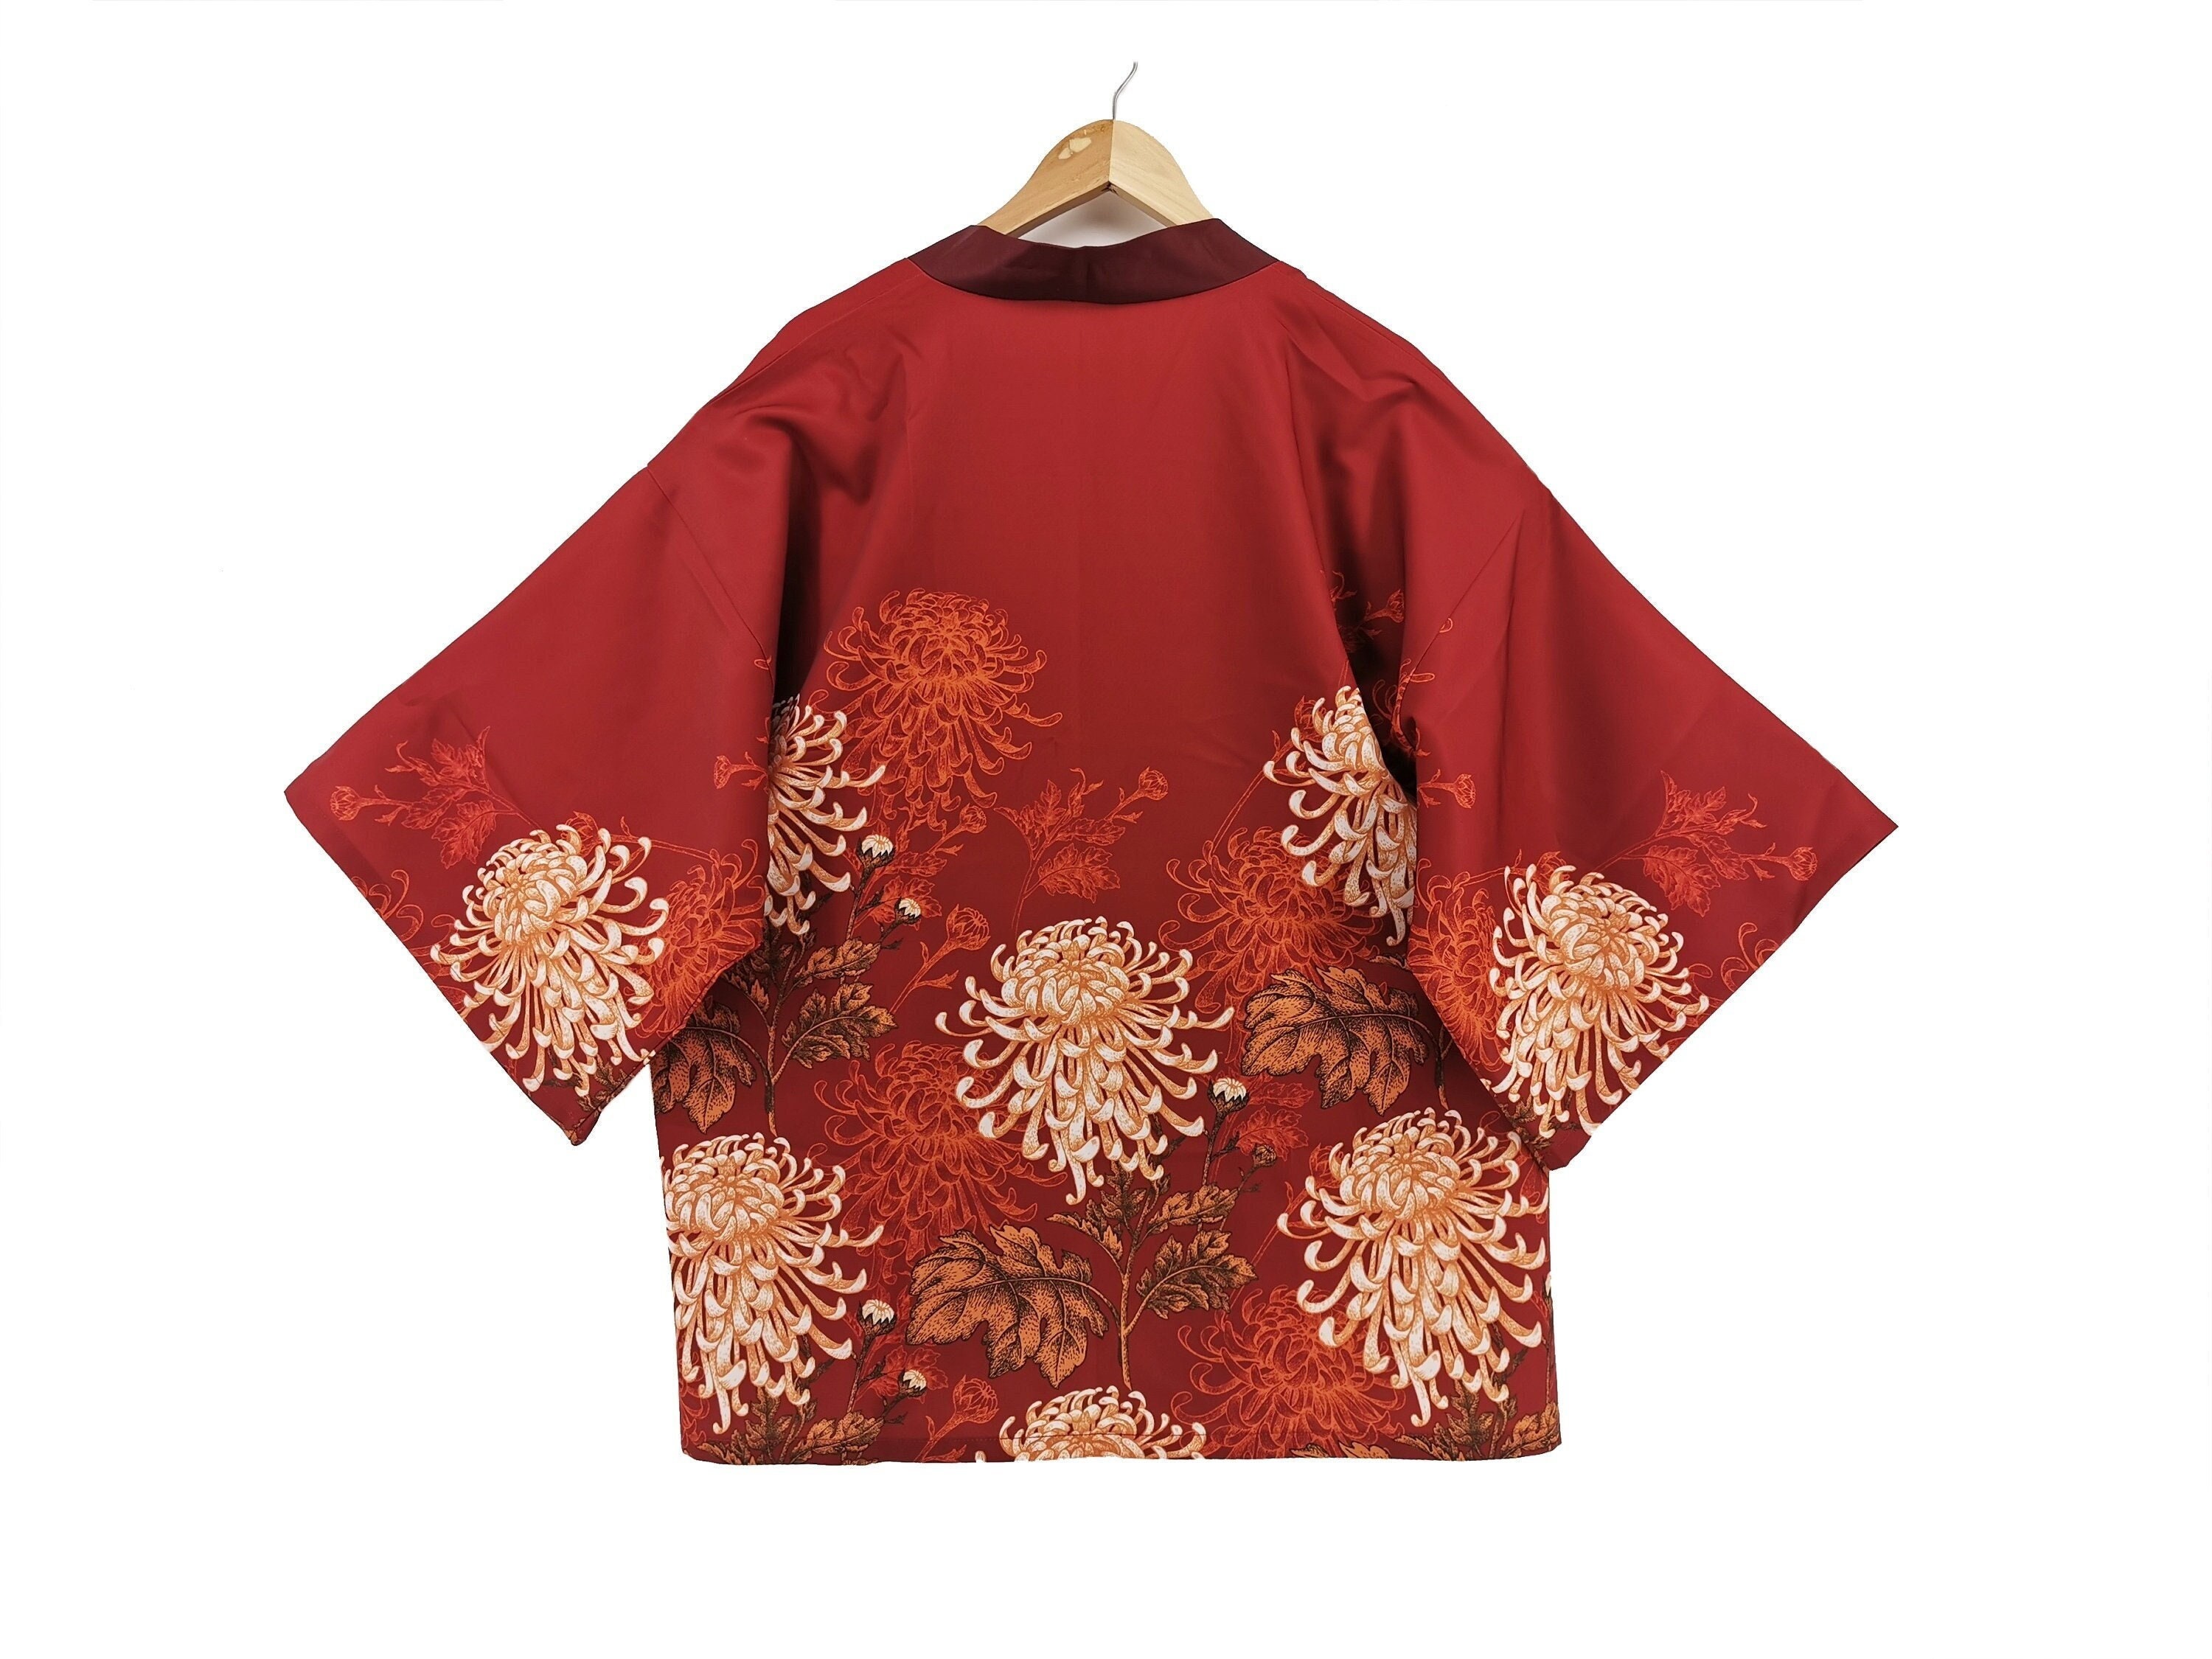 Maja Salvador Sex Video - Kimono Haori Chrysanthemum Kimono Jacket Japanese Clothing - Etsy